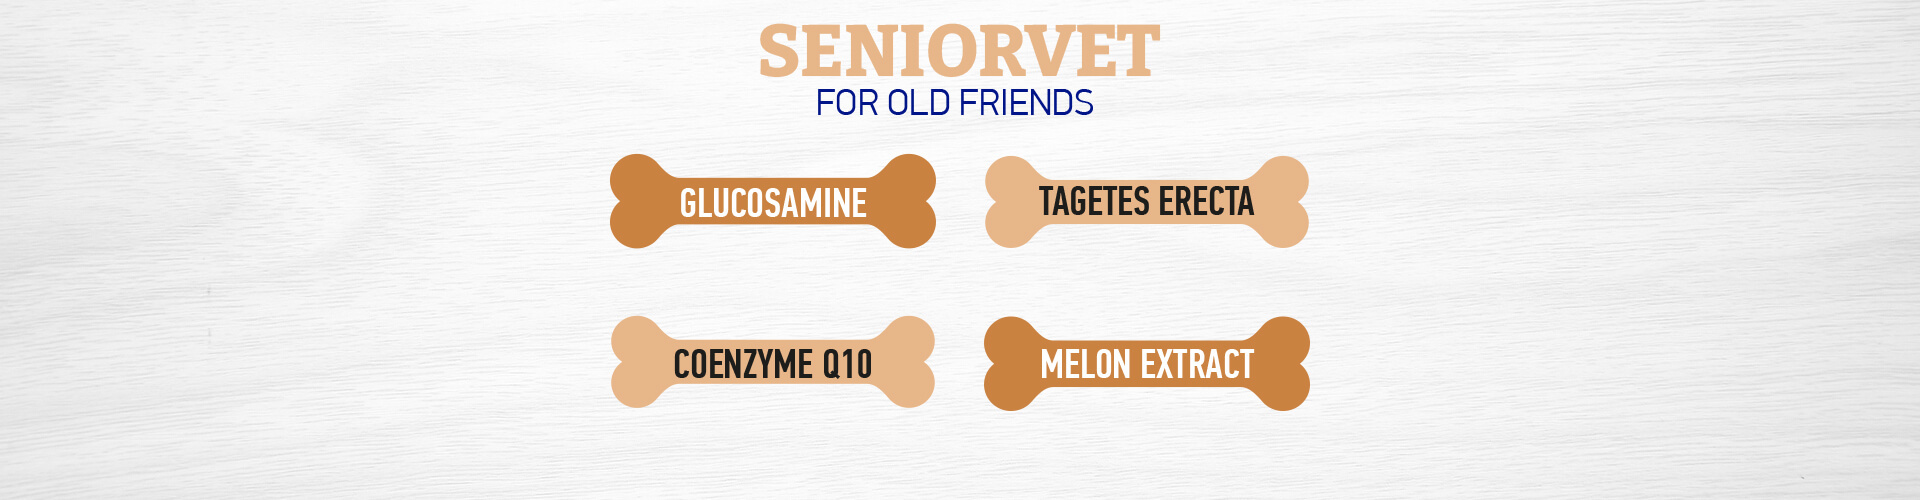 Dr. Vet Seniorvet tablete pentru sprijinul animalelor de companie îmbătrânite - zoom